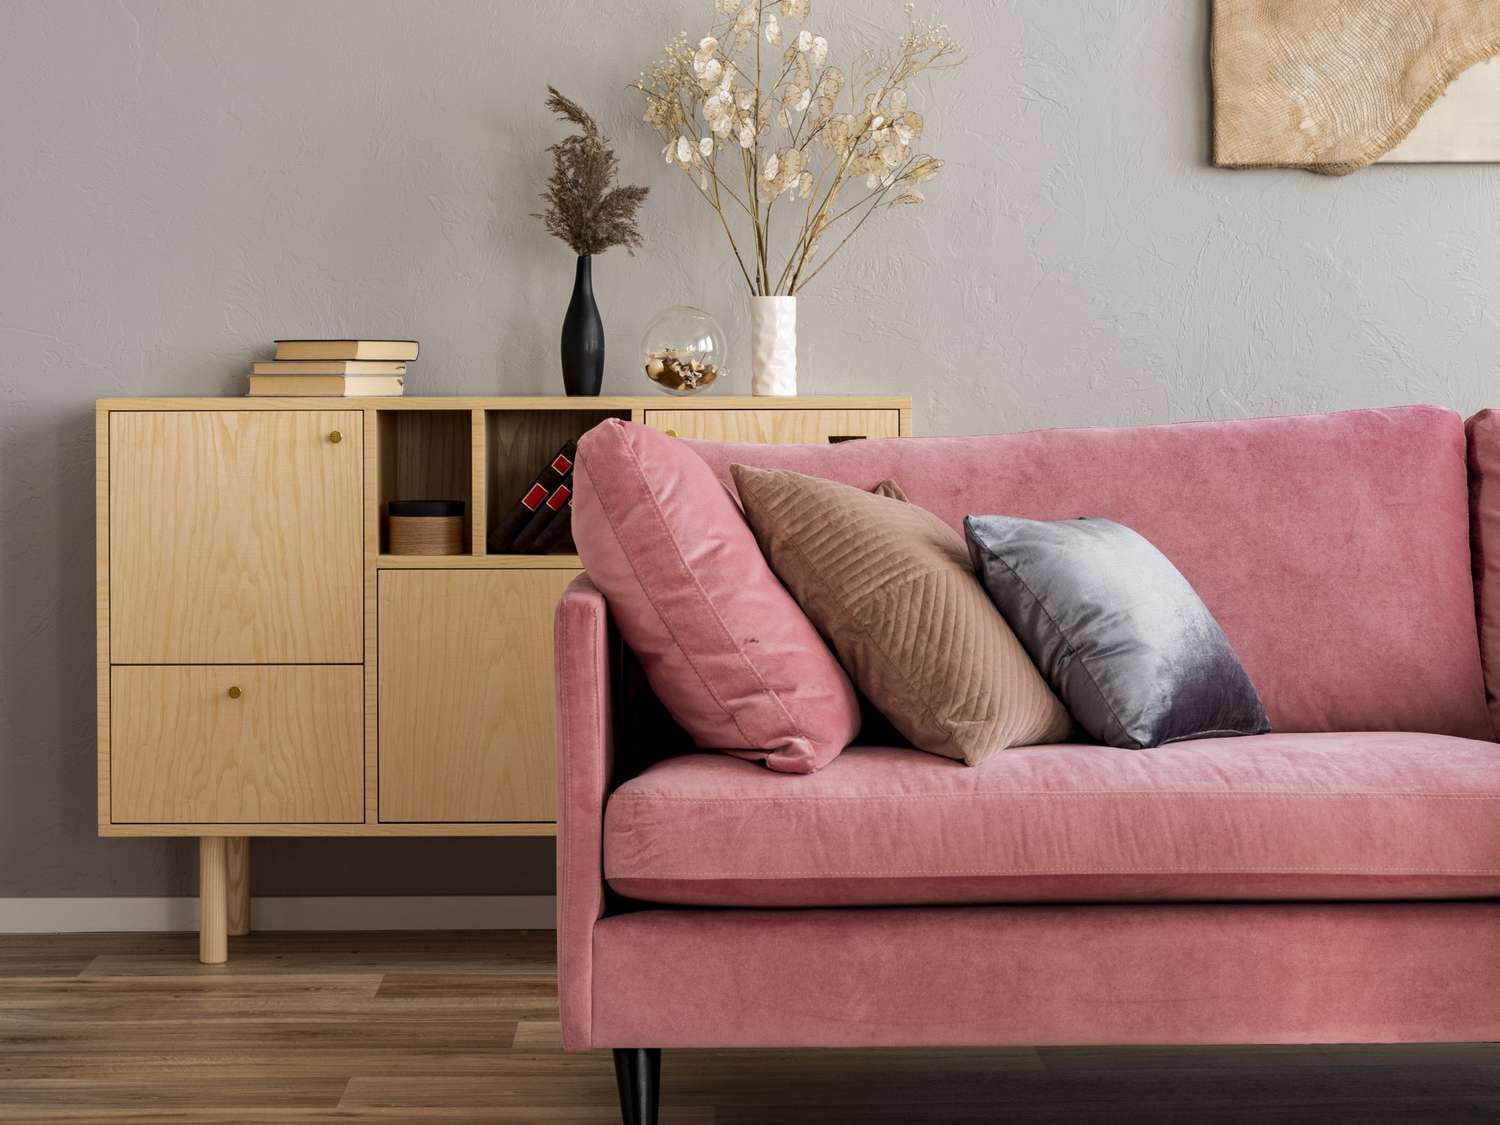 Flores en jarrones sobre cómoda de madera en interior de salón contemporáneo con sofá rosa pastel